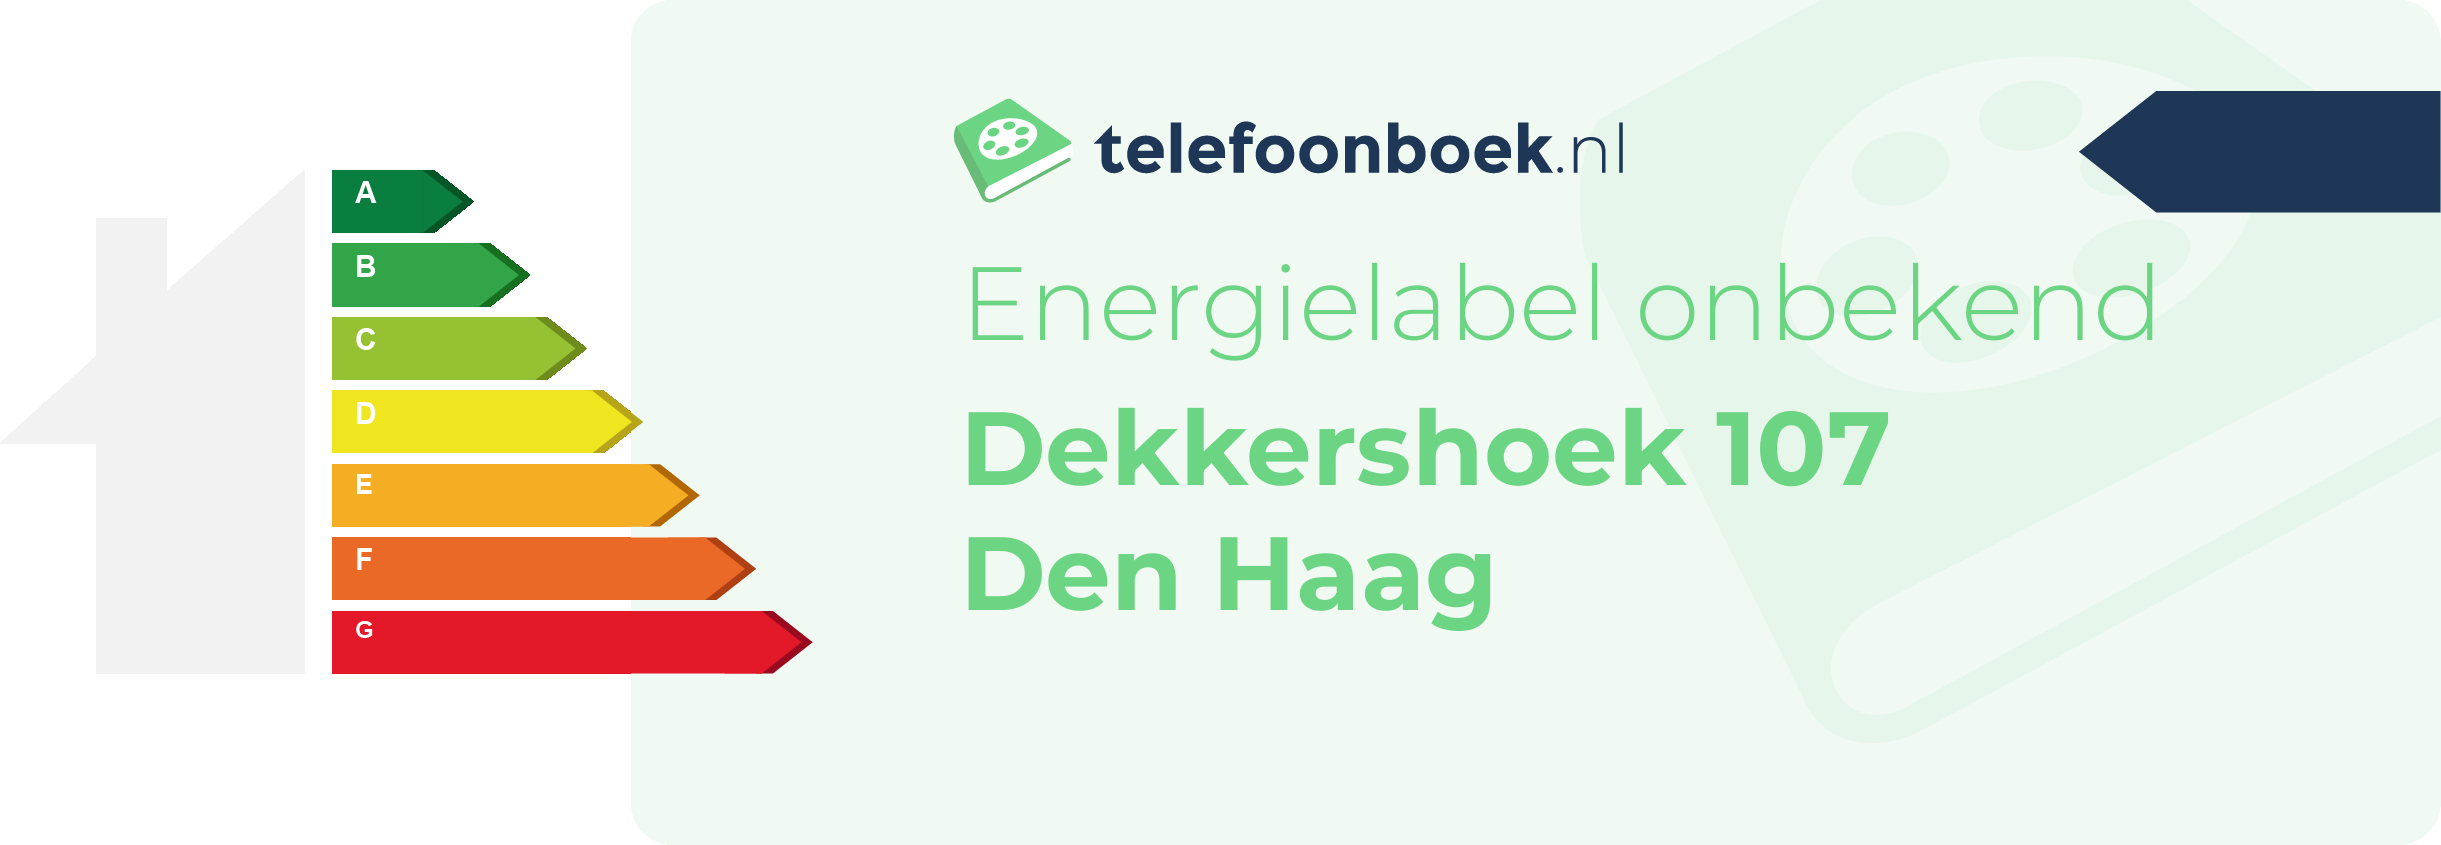 Energielabel Dekkershoek 107 Den Haag